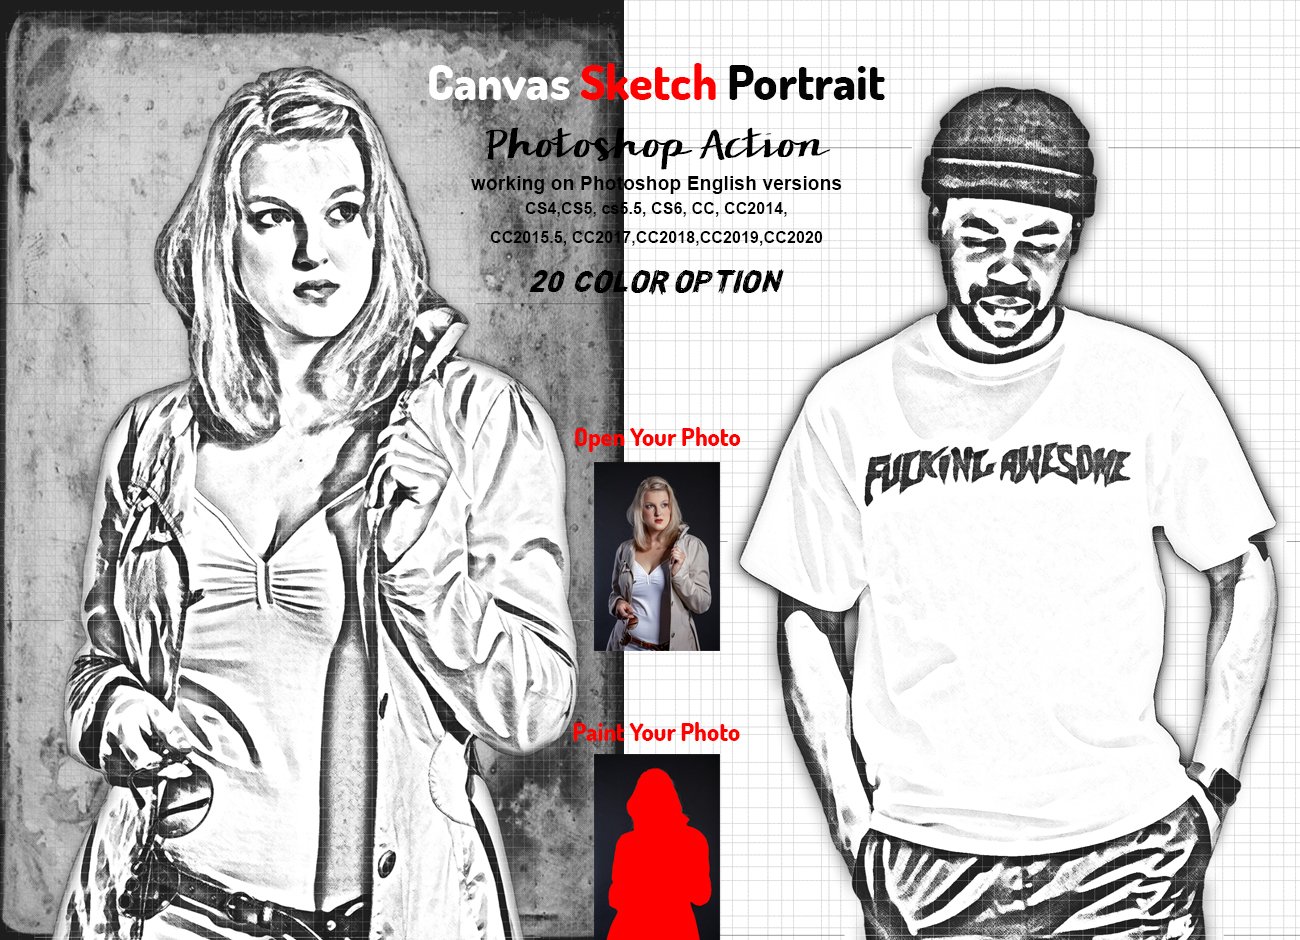 Canvas Sketch Portrait PS Actioncover image.